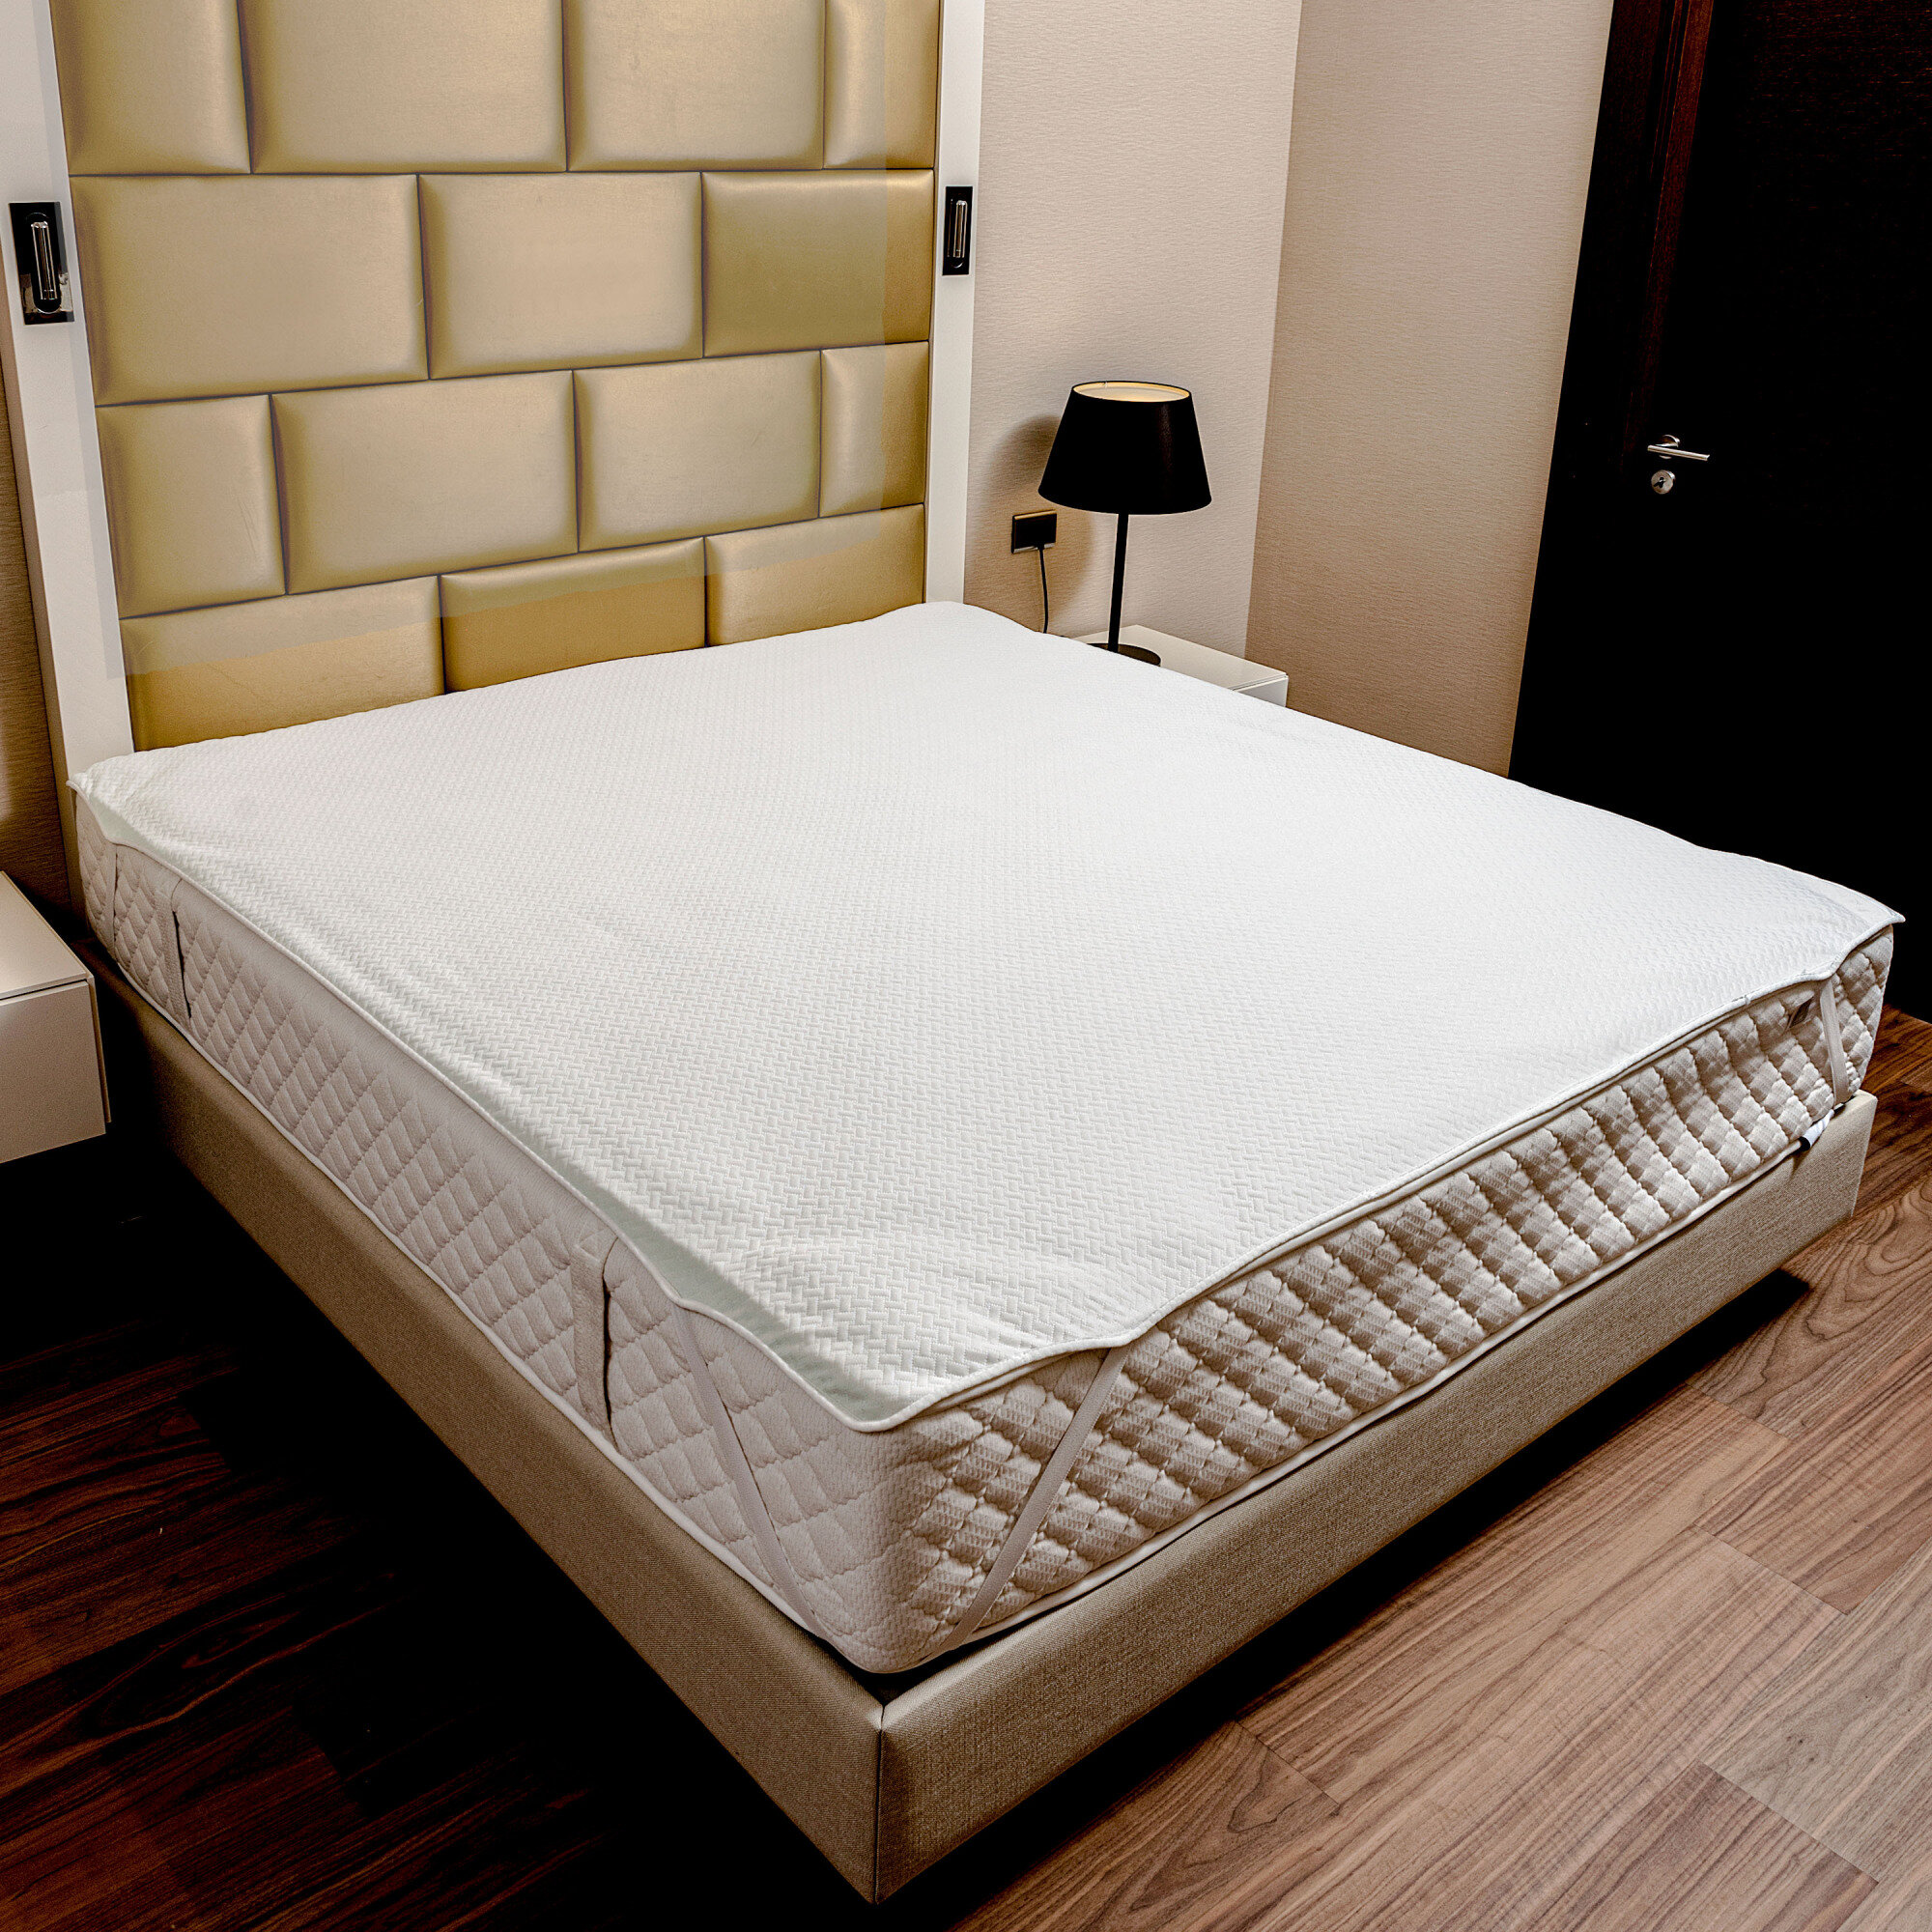 https://assets.wfcdn.com/im/69032759/compr-r85/1387/138772696/waterproof-elastic-strap-mattress-protector-mattress-protector-case-pack.jpg